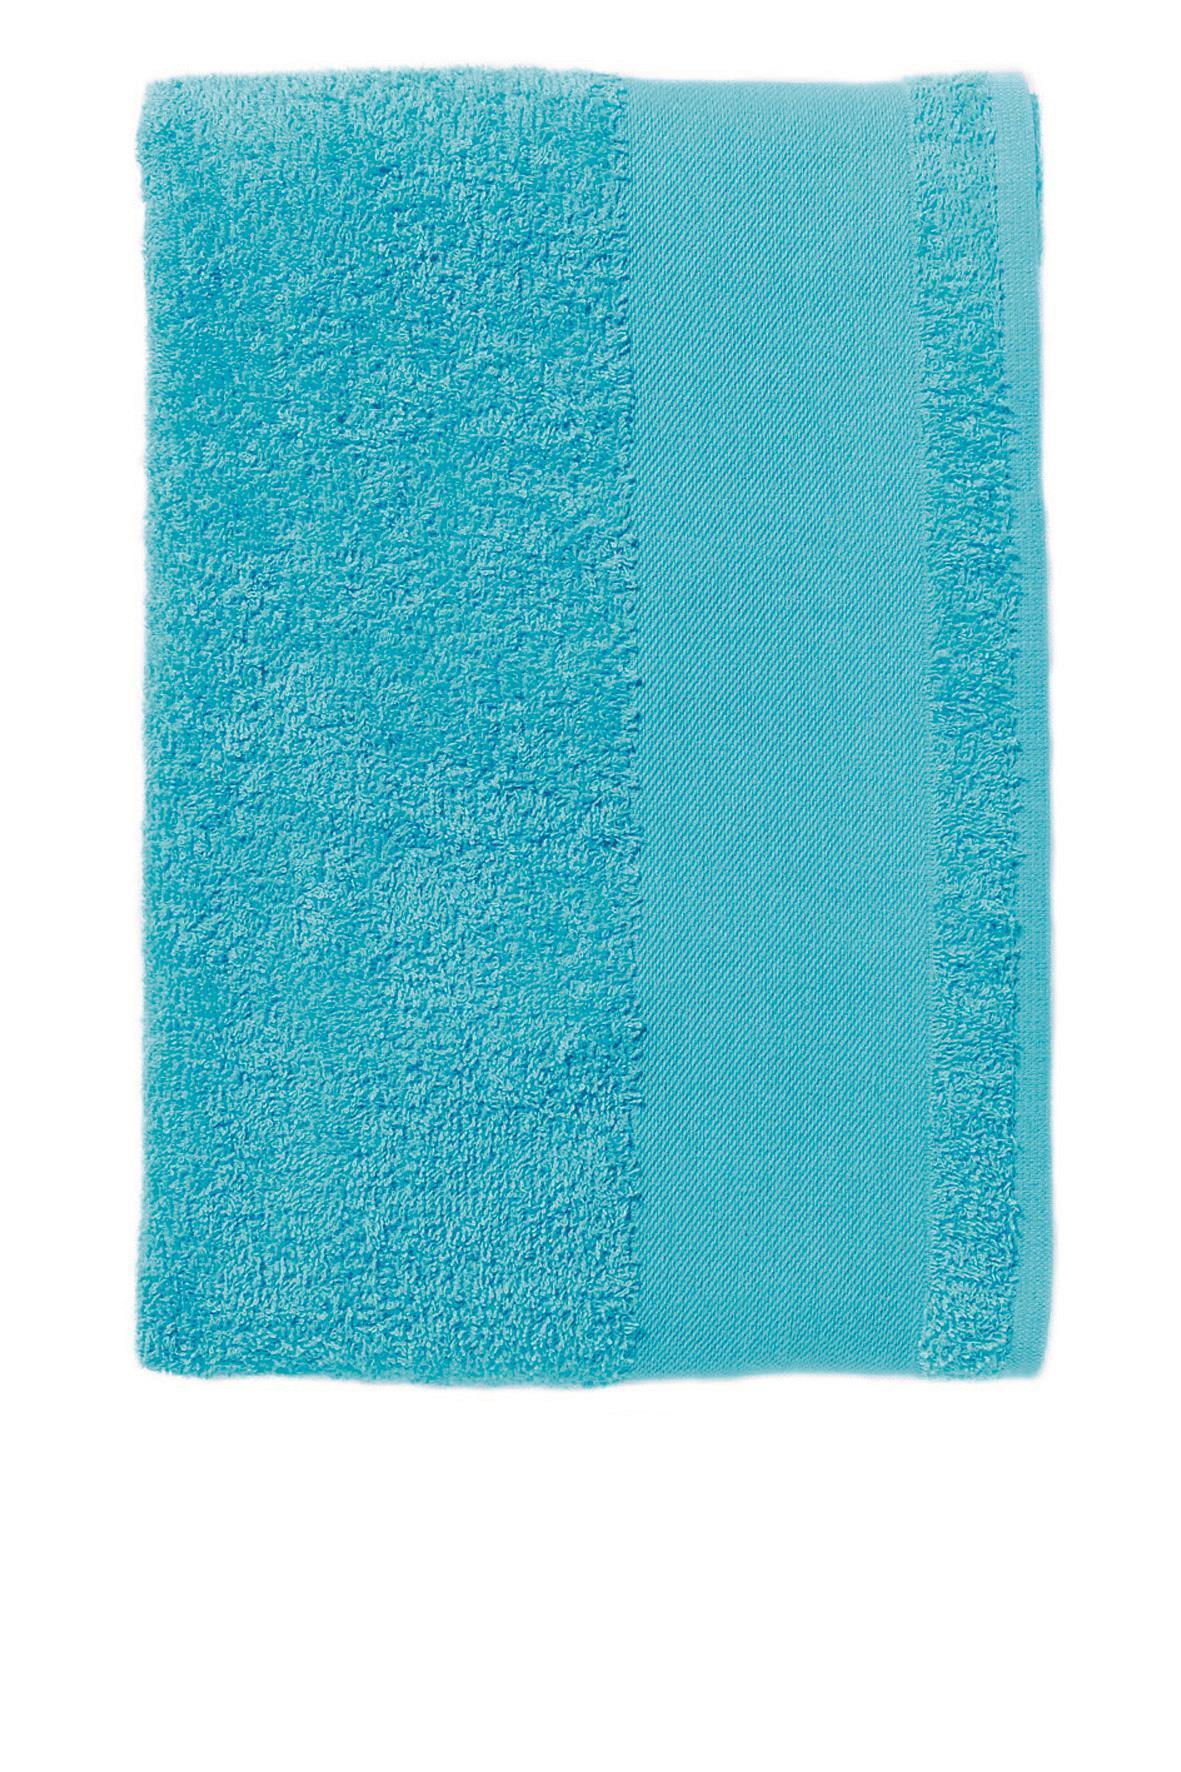 Handoeken aqua blauw handdoek diverse maten strandlaken zeeblauw